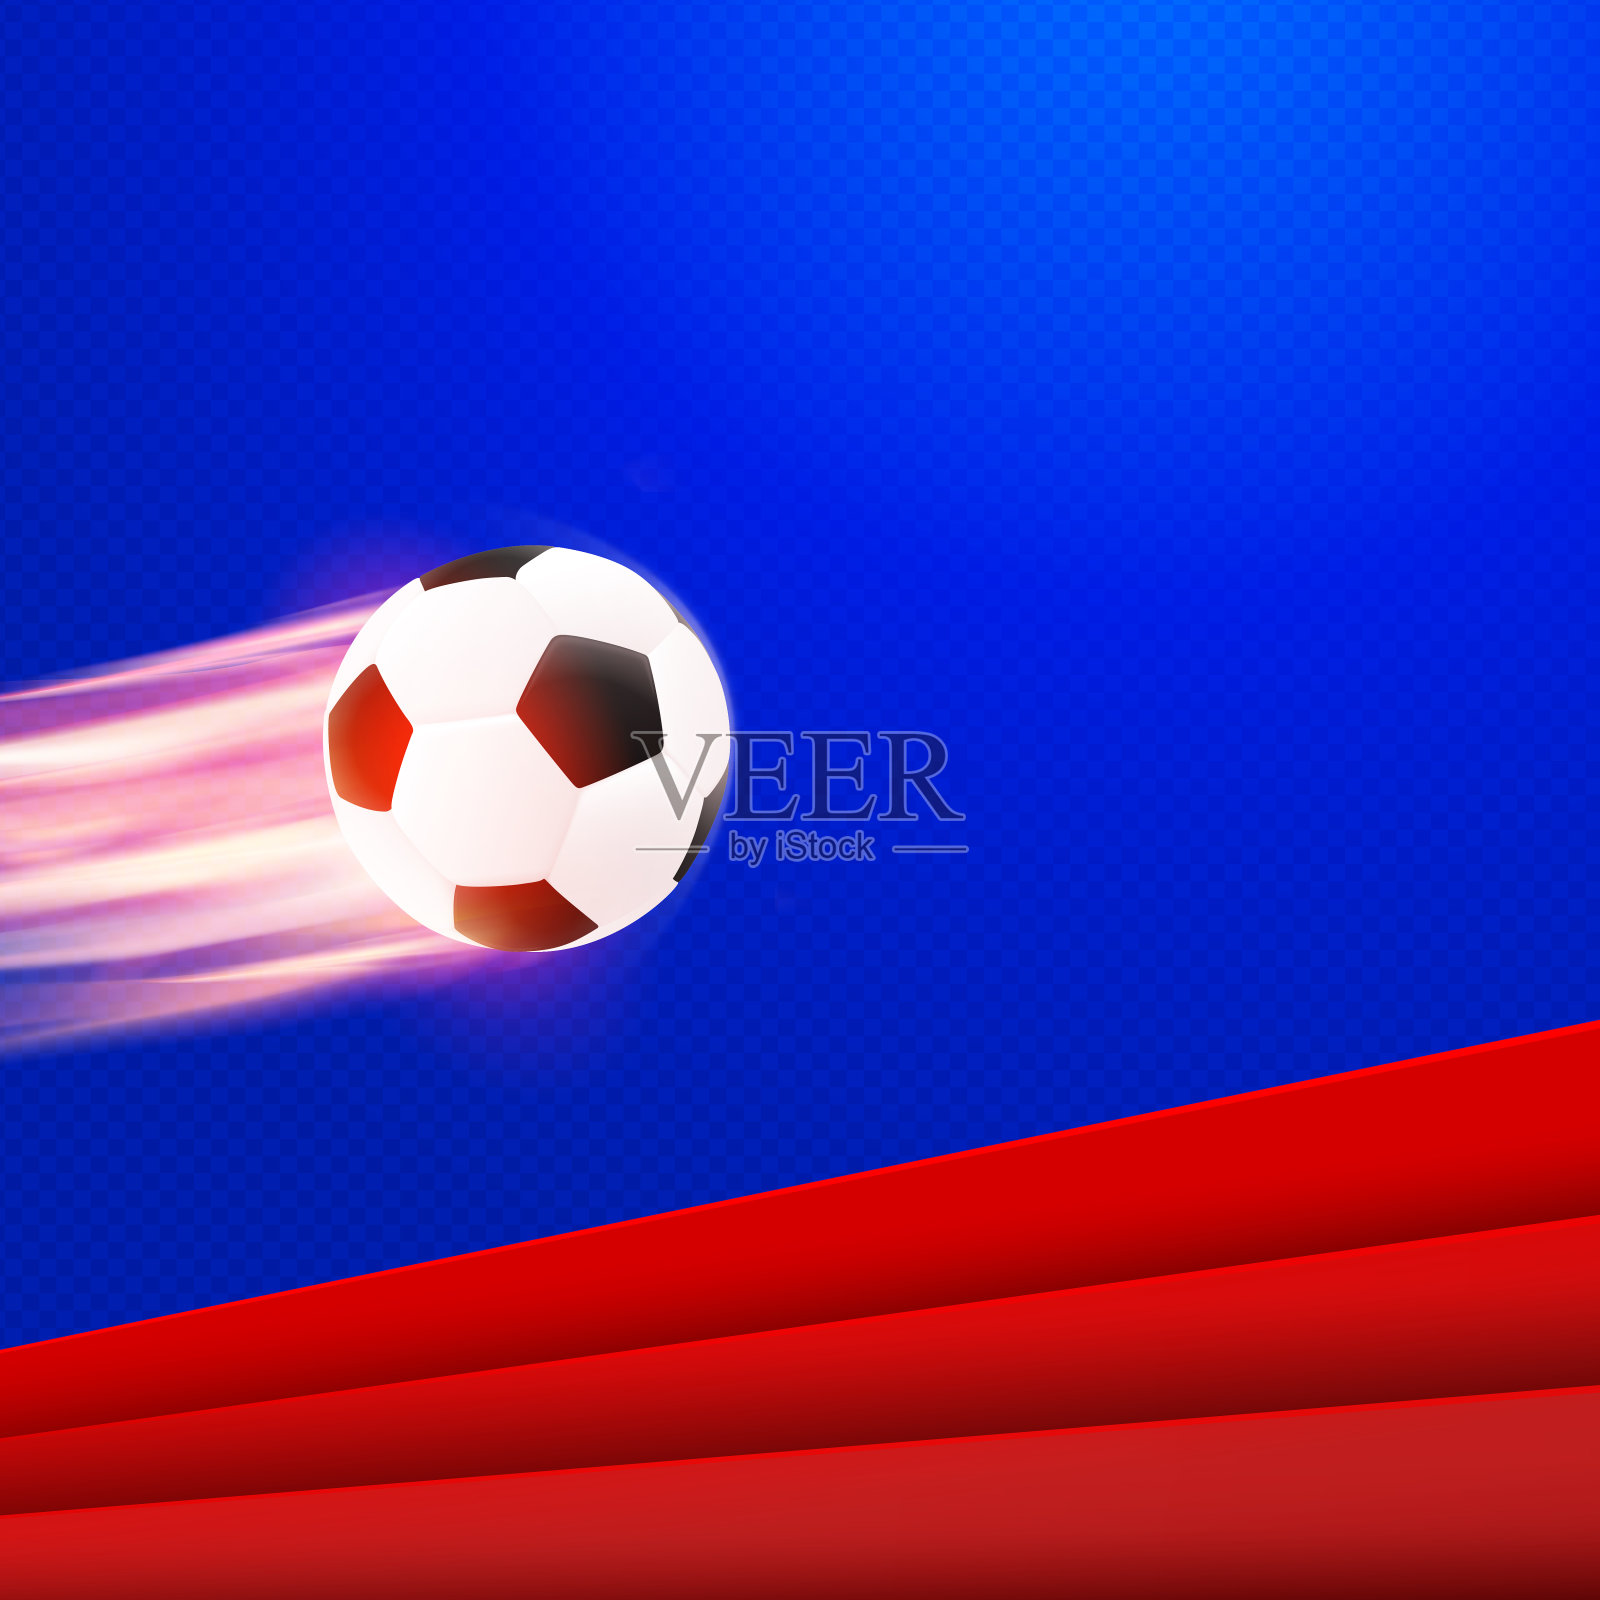 足球海报设计。红蓝色矢量背景与黑白现实飞行足球在火。运动旗帜模板插画图片素材